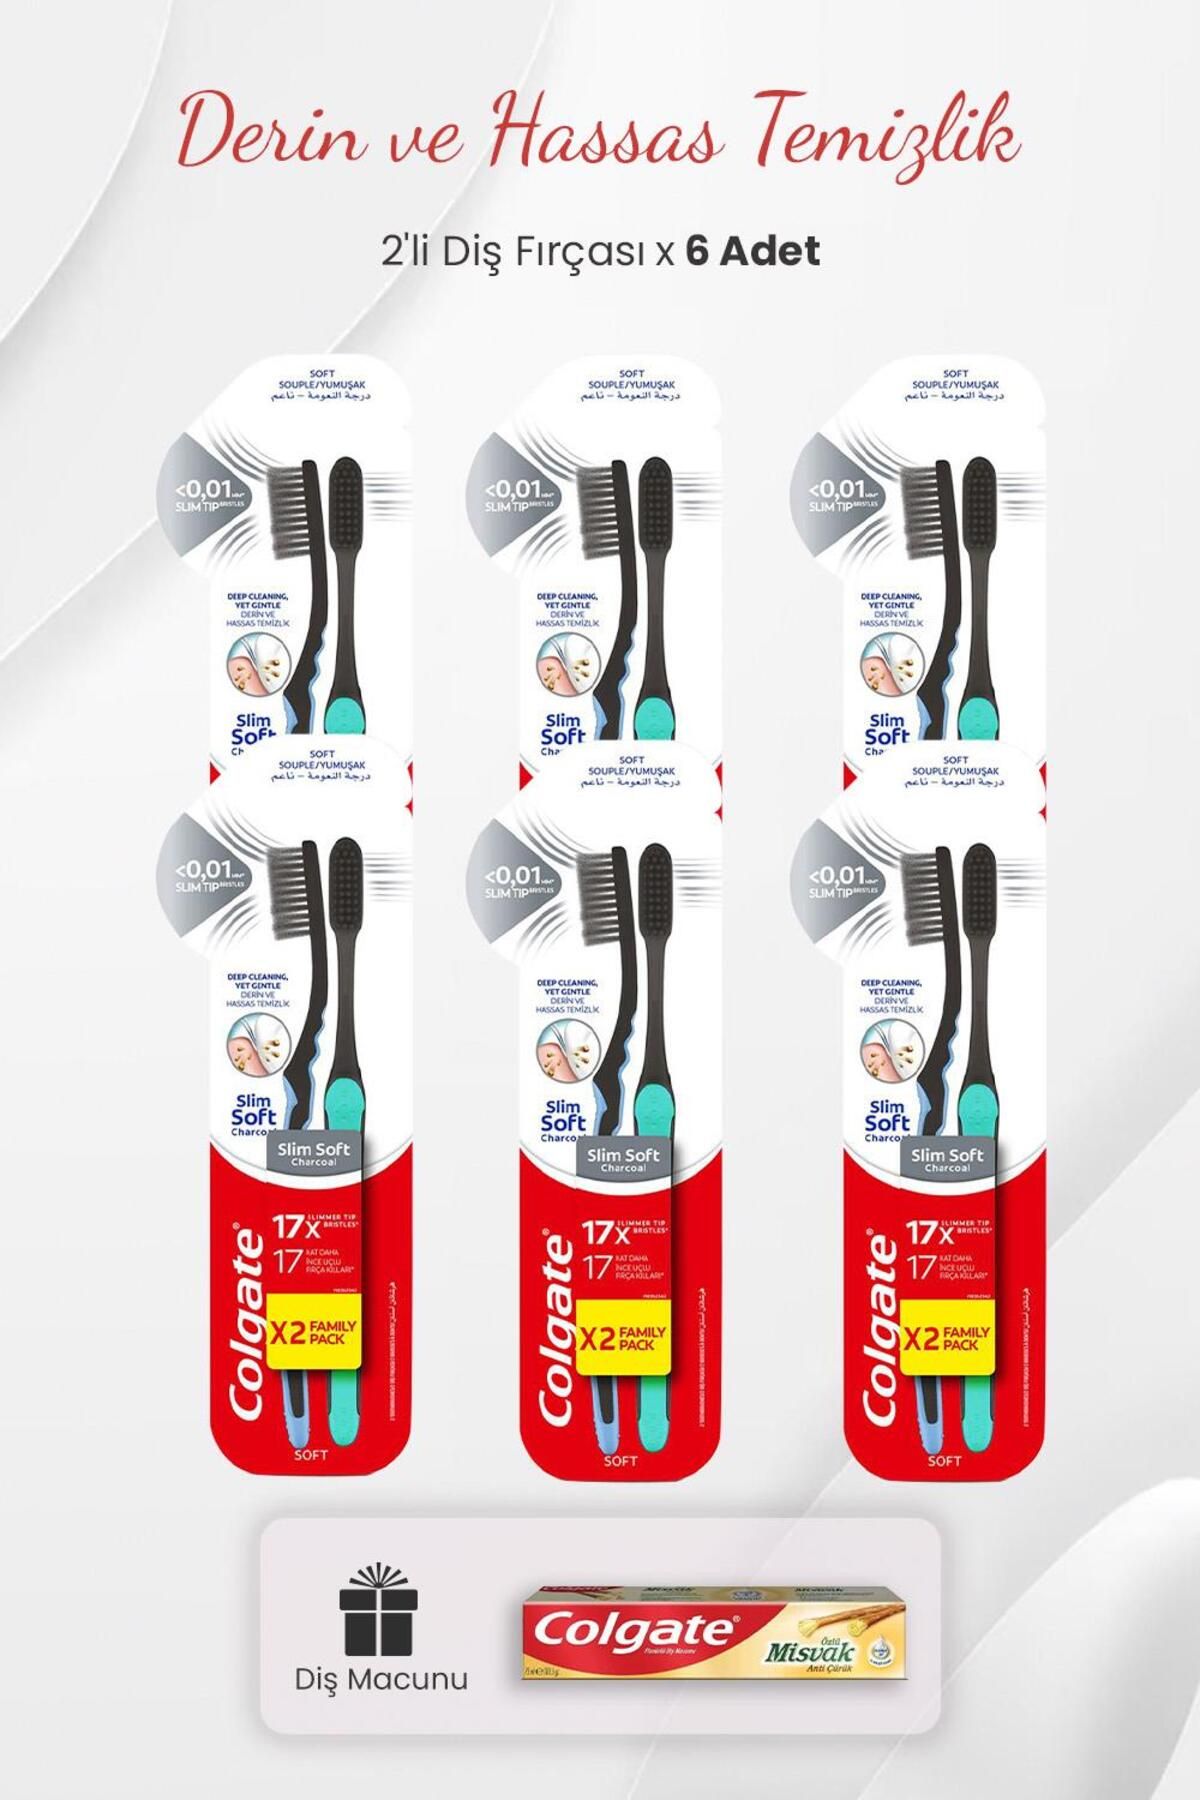 Colgate Slim Soft Charcoal 2'li Diş Fırçası x 6 Adet ve Misvak Özlü Diş Macunu